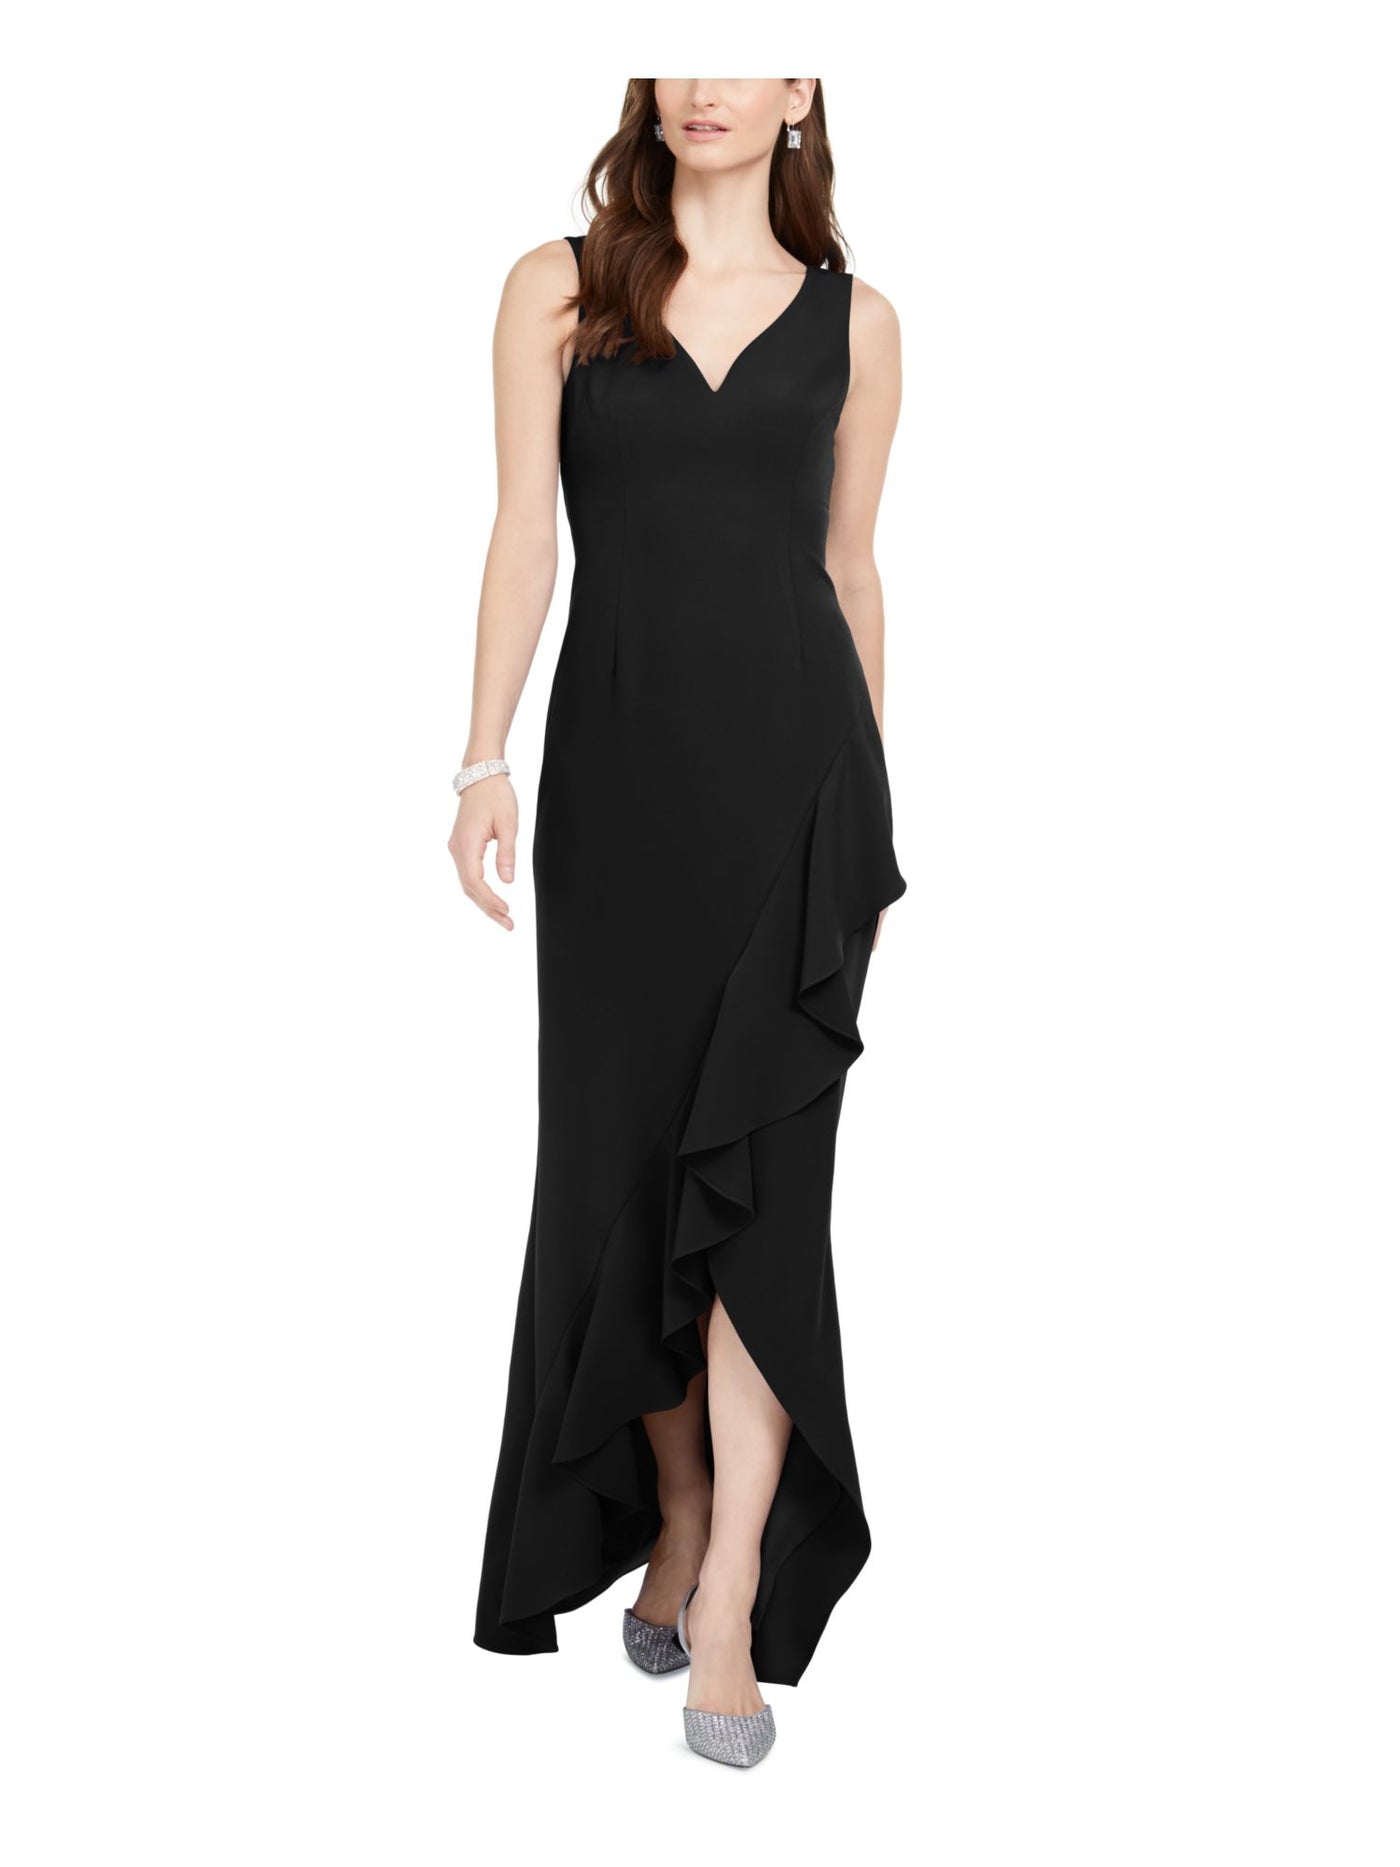 ADRIANNA PAPELL Womens Black Slitted Sleeveless V Neck Full-Length Formal Sheath Dress 4